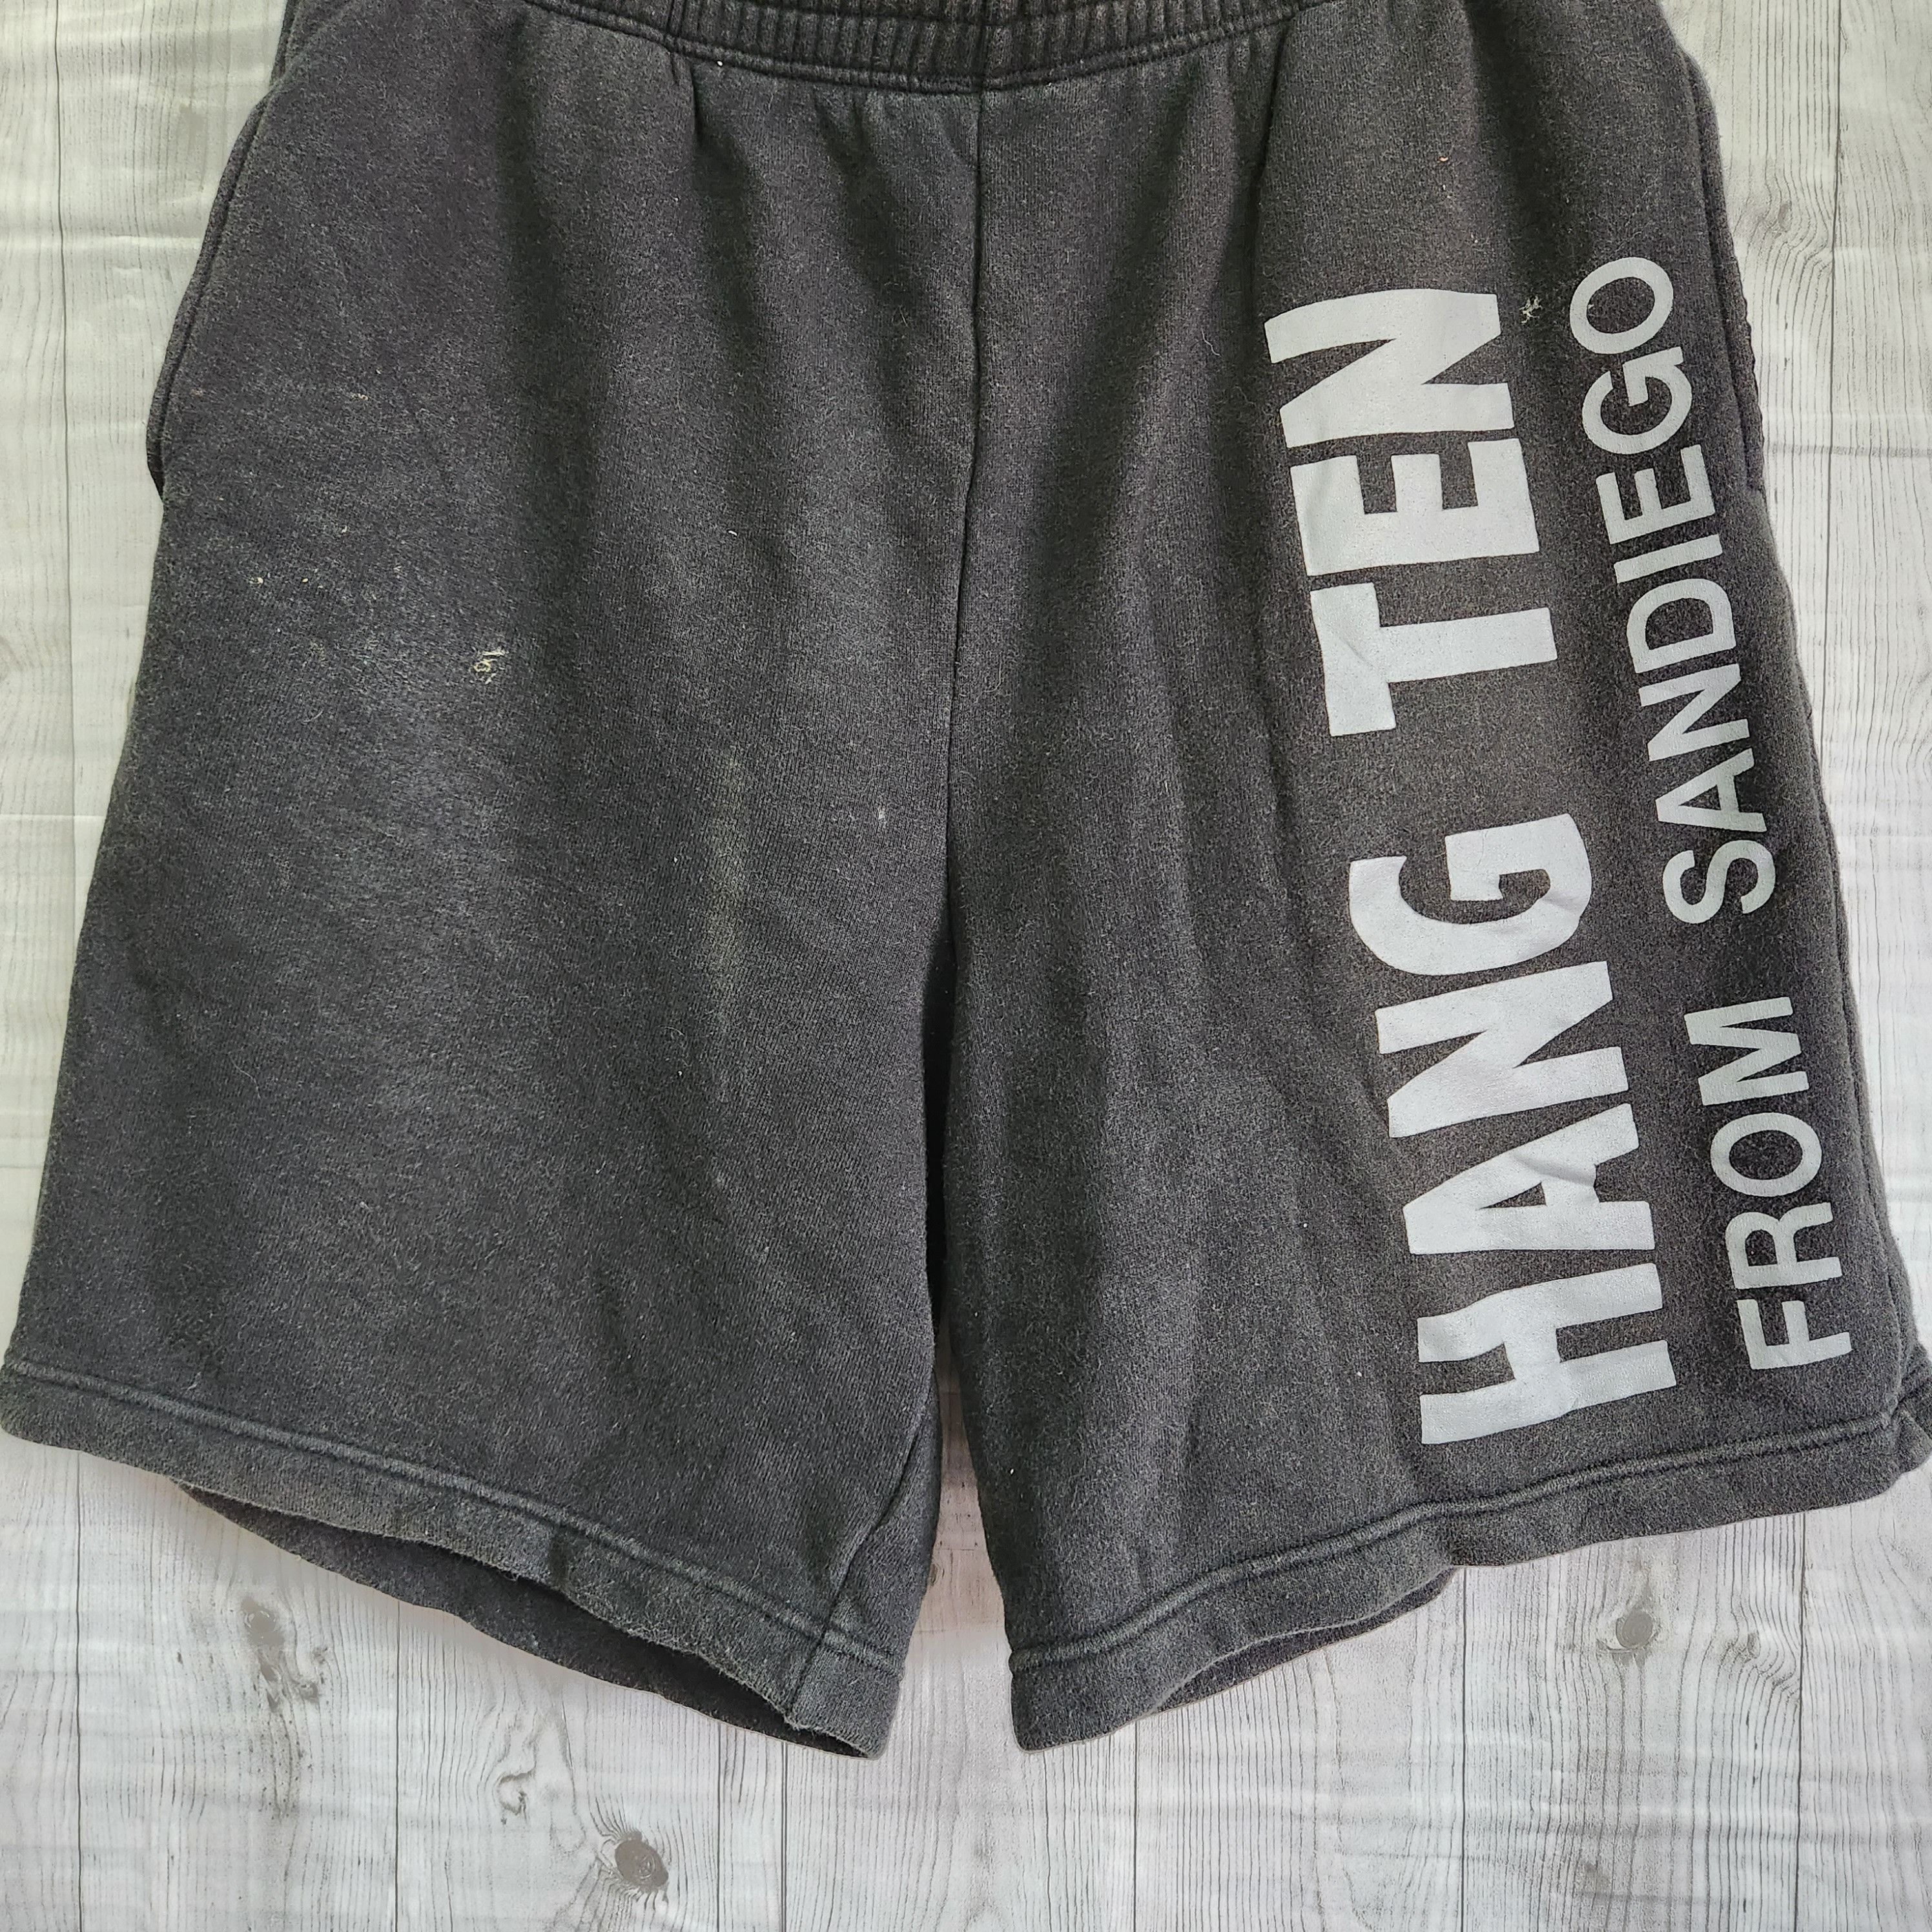 Hang Ten Vintage Big Logo San Diego Shorts Made In Japan - 10